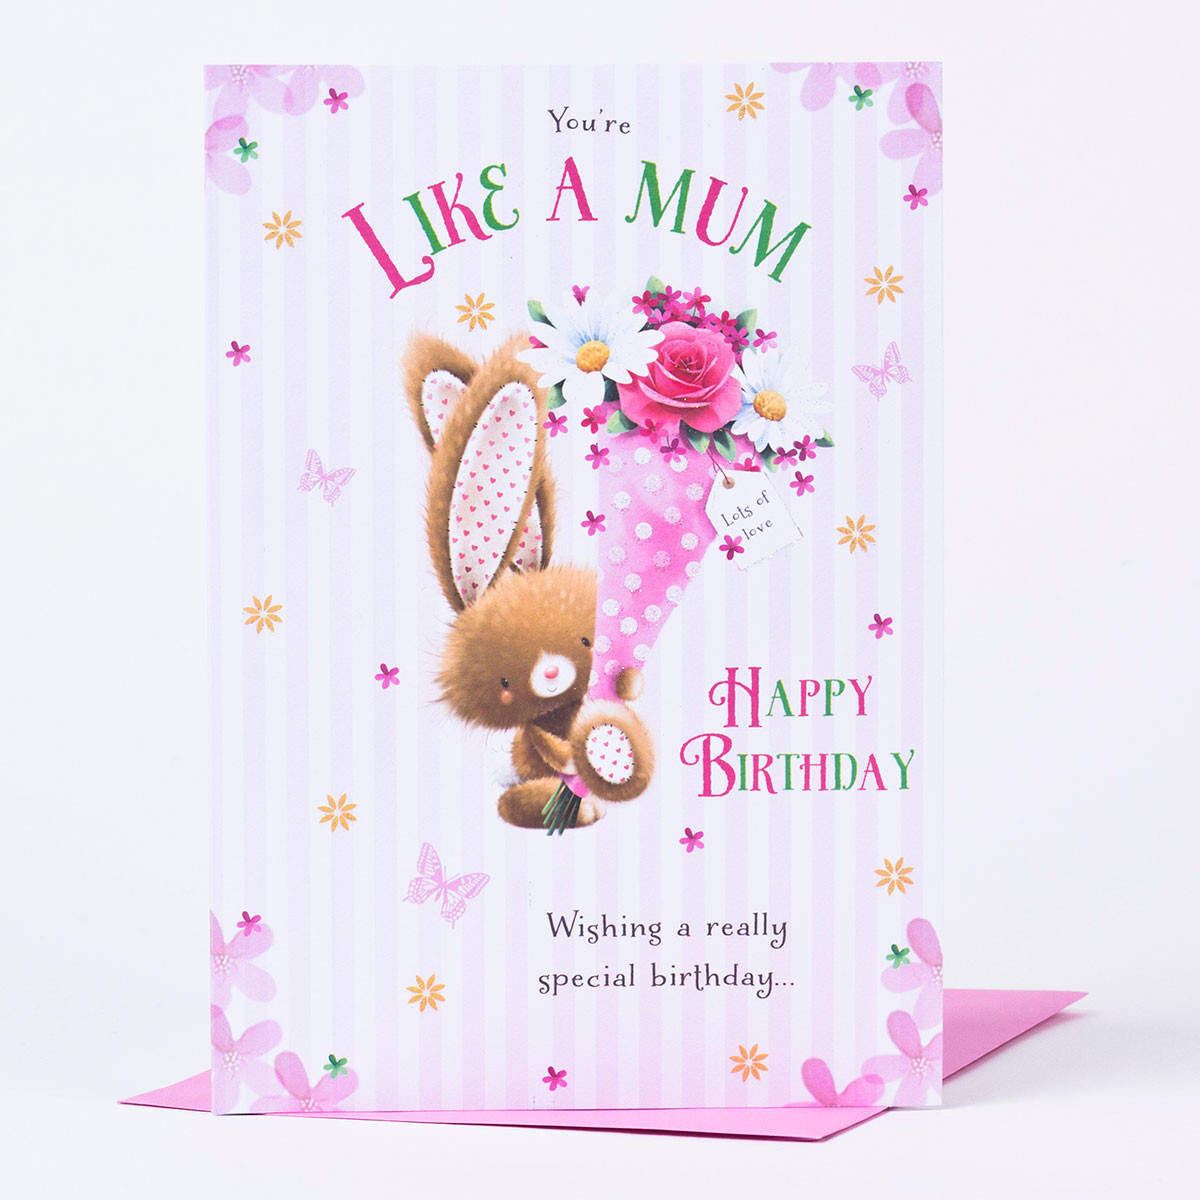 A Birthday Card
 Birthday Card Like A Mum